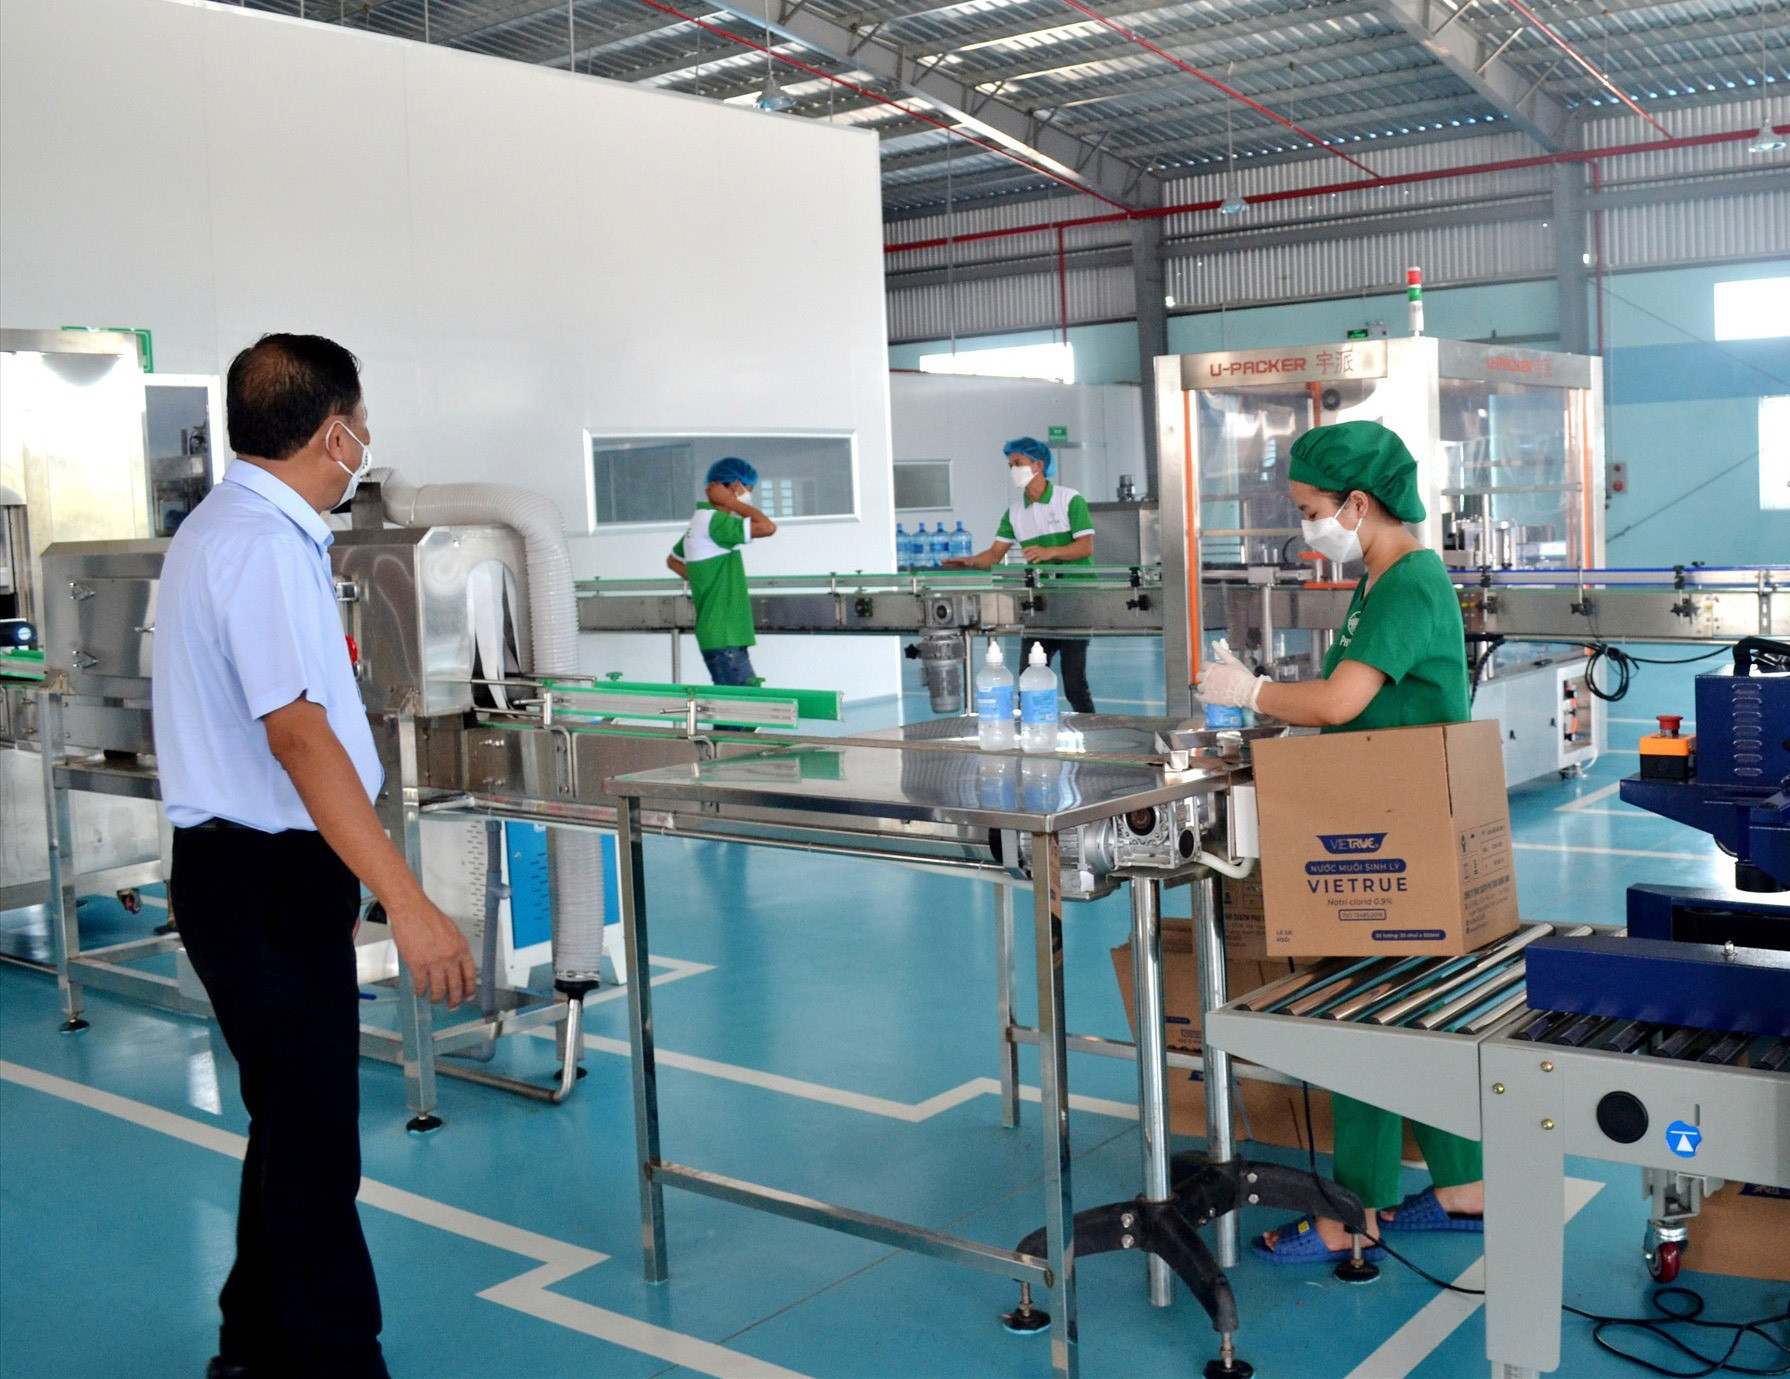 Nhà máy sản xuất trang thiết bị y tế của Công ty TNHH Sản xuất và thương mại Phú Toàn Quảng Nam đi vào hoạt động ở Cụm công nghiệp Hà Lam - Chợ Được (xã Bình Phục). Ảnh: Q.V